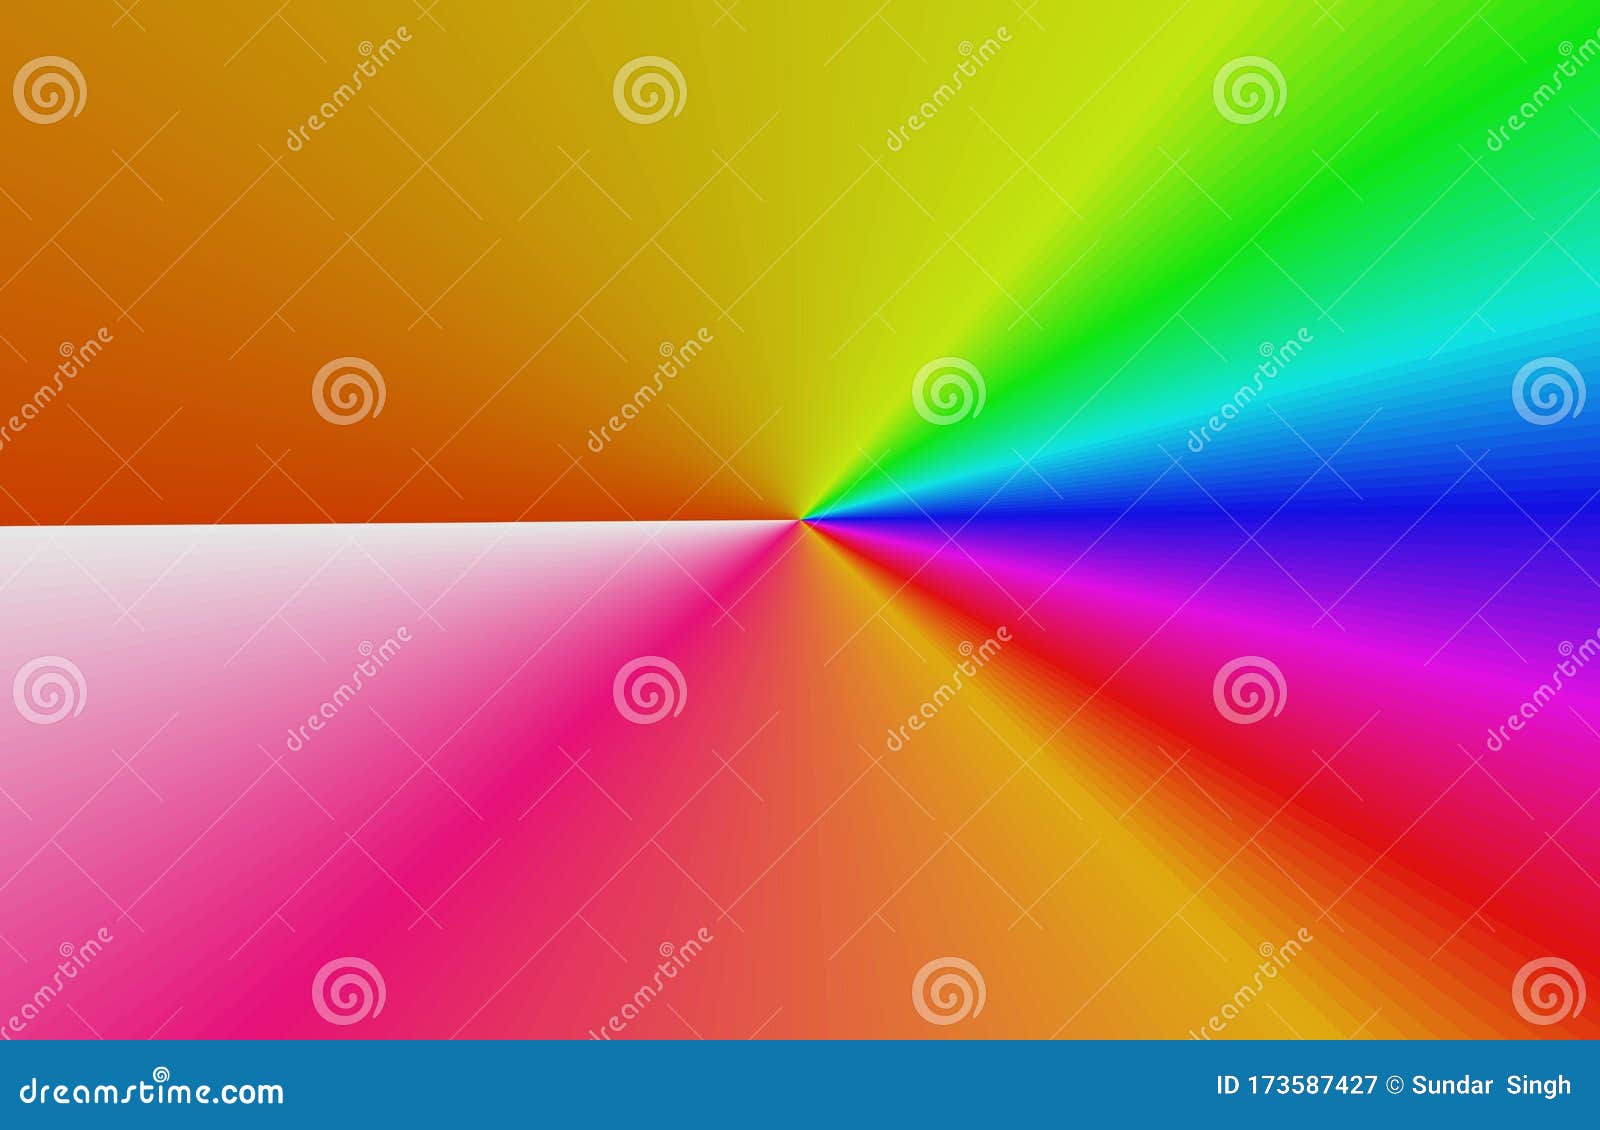 Resumen De Fondo De Arco Iris Borroso Papel Colorido Colores Luminosos  Stock de ilustración - Ilustración de corona, extracto: 173587427